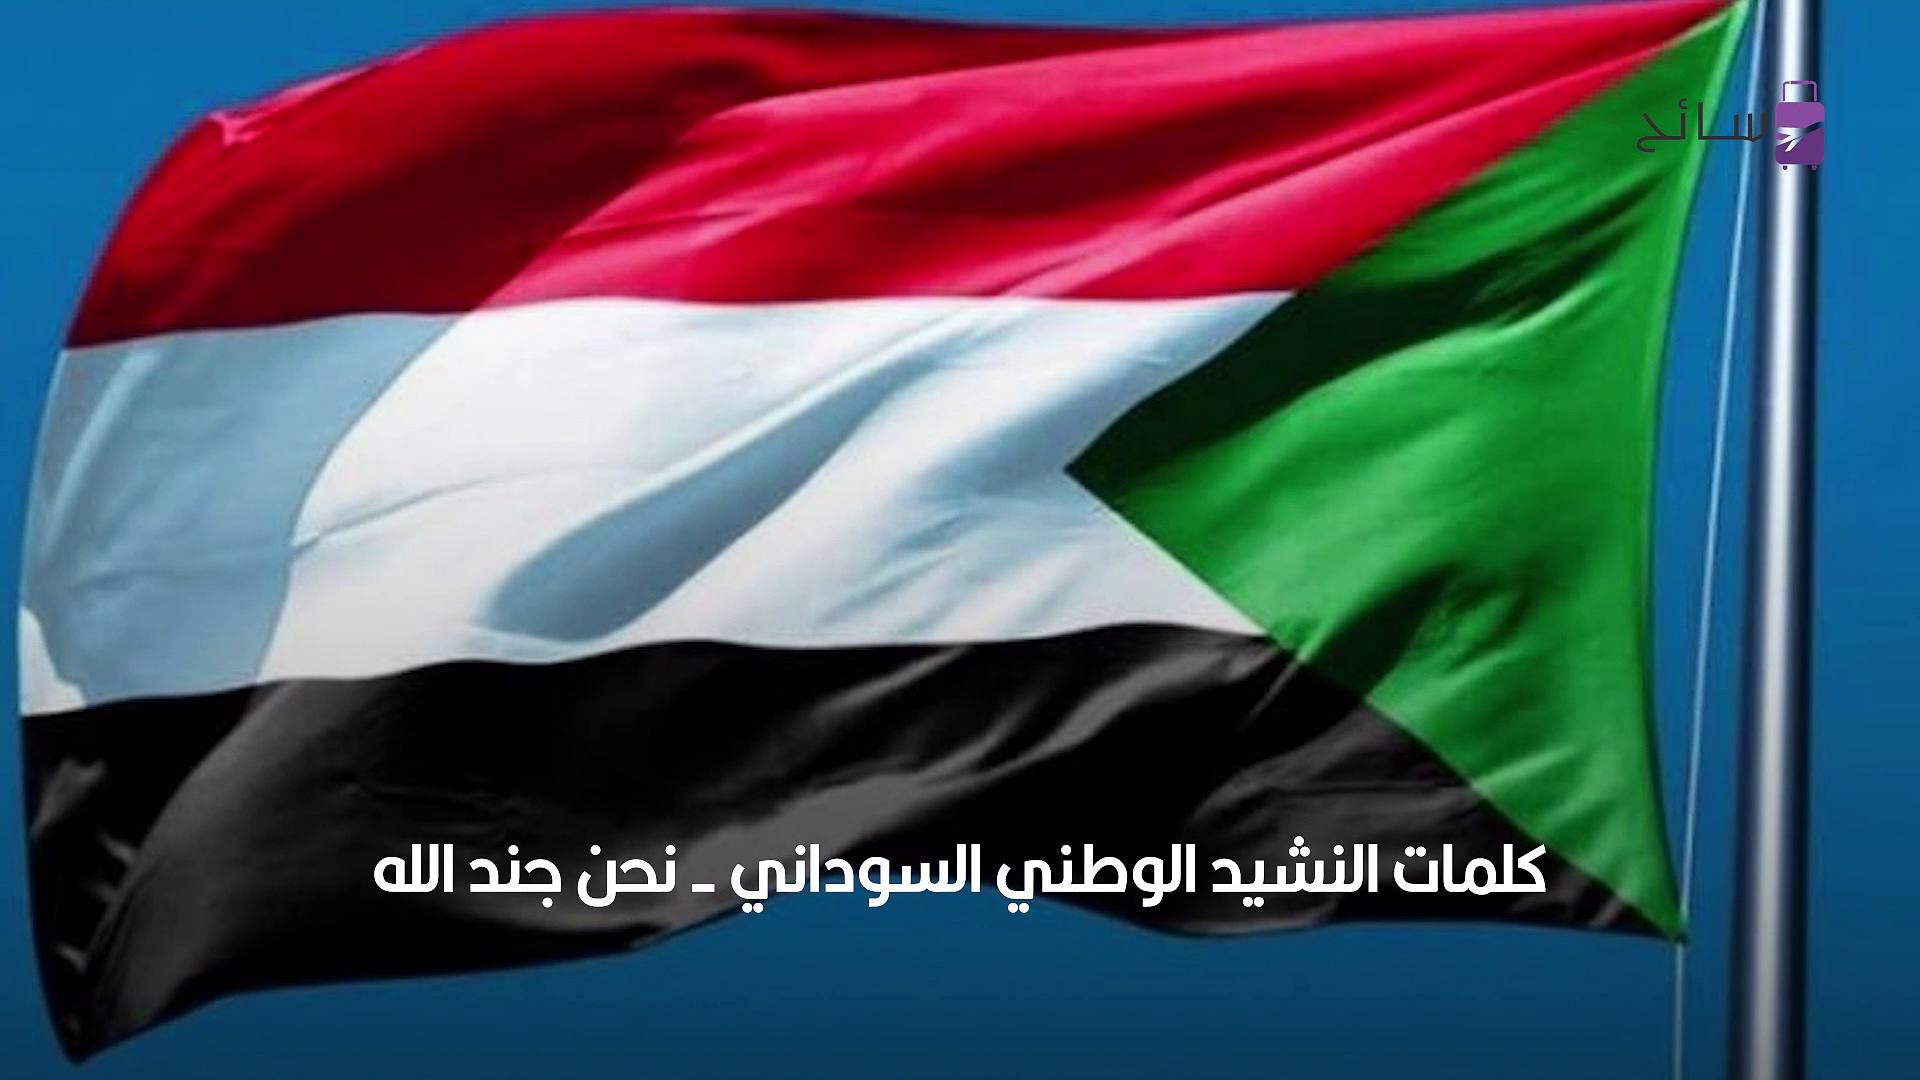 النشيد الوطني السوداني - نحن جند الله، جند الوطن - سائح